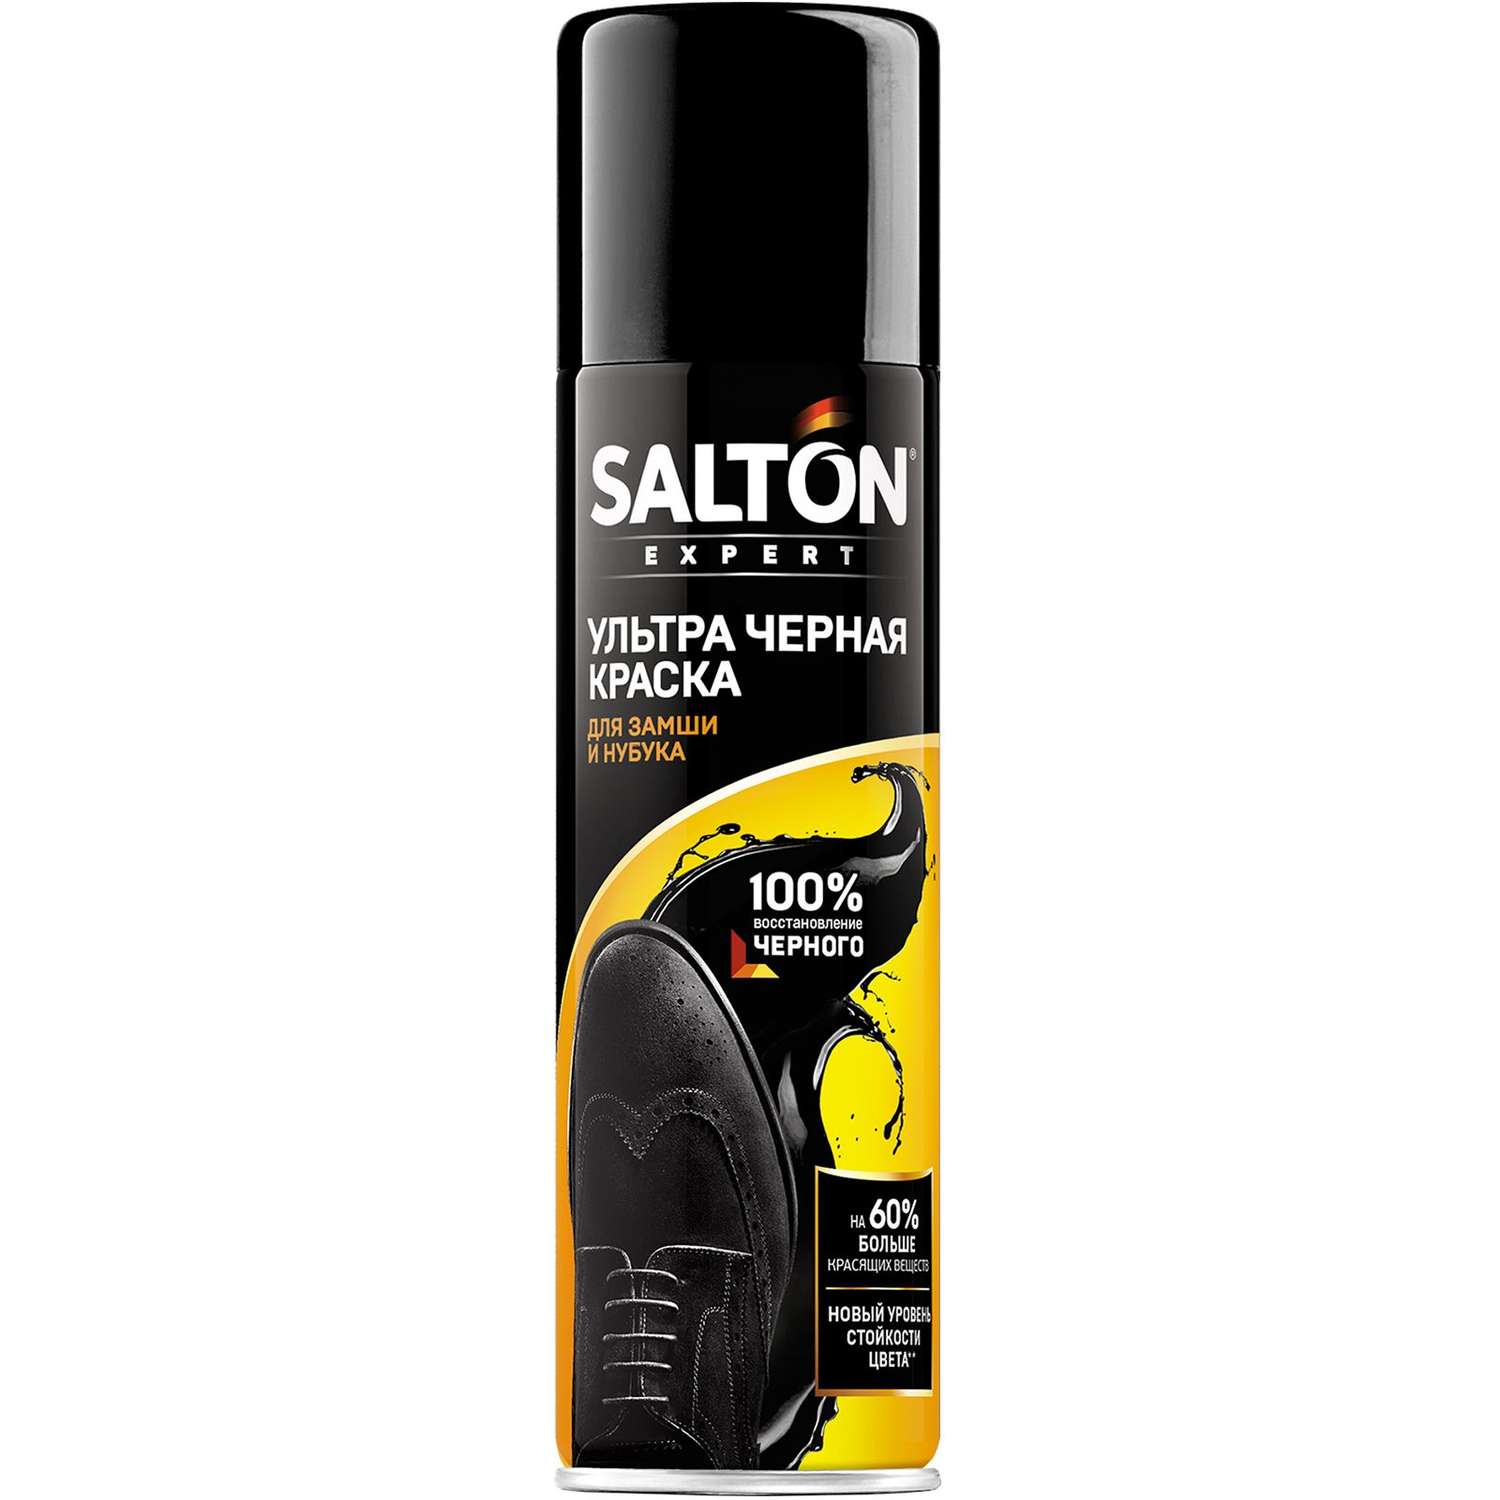 Ультра черная краска для замши Salton Expert 55555023 - фото 1